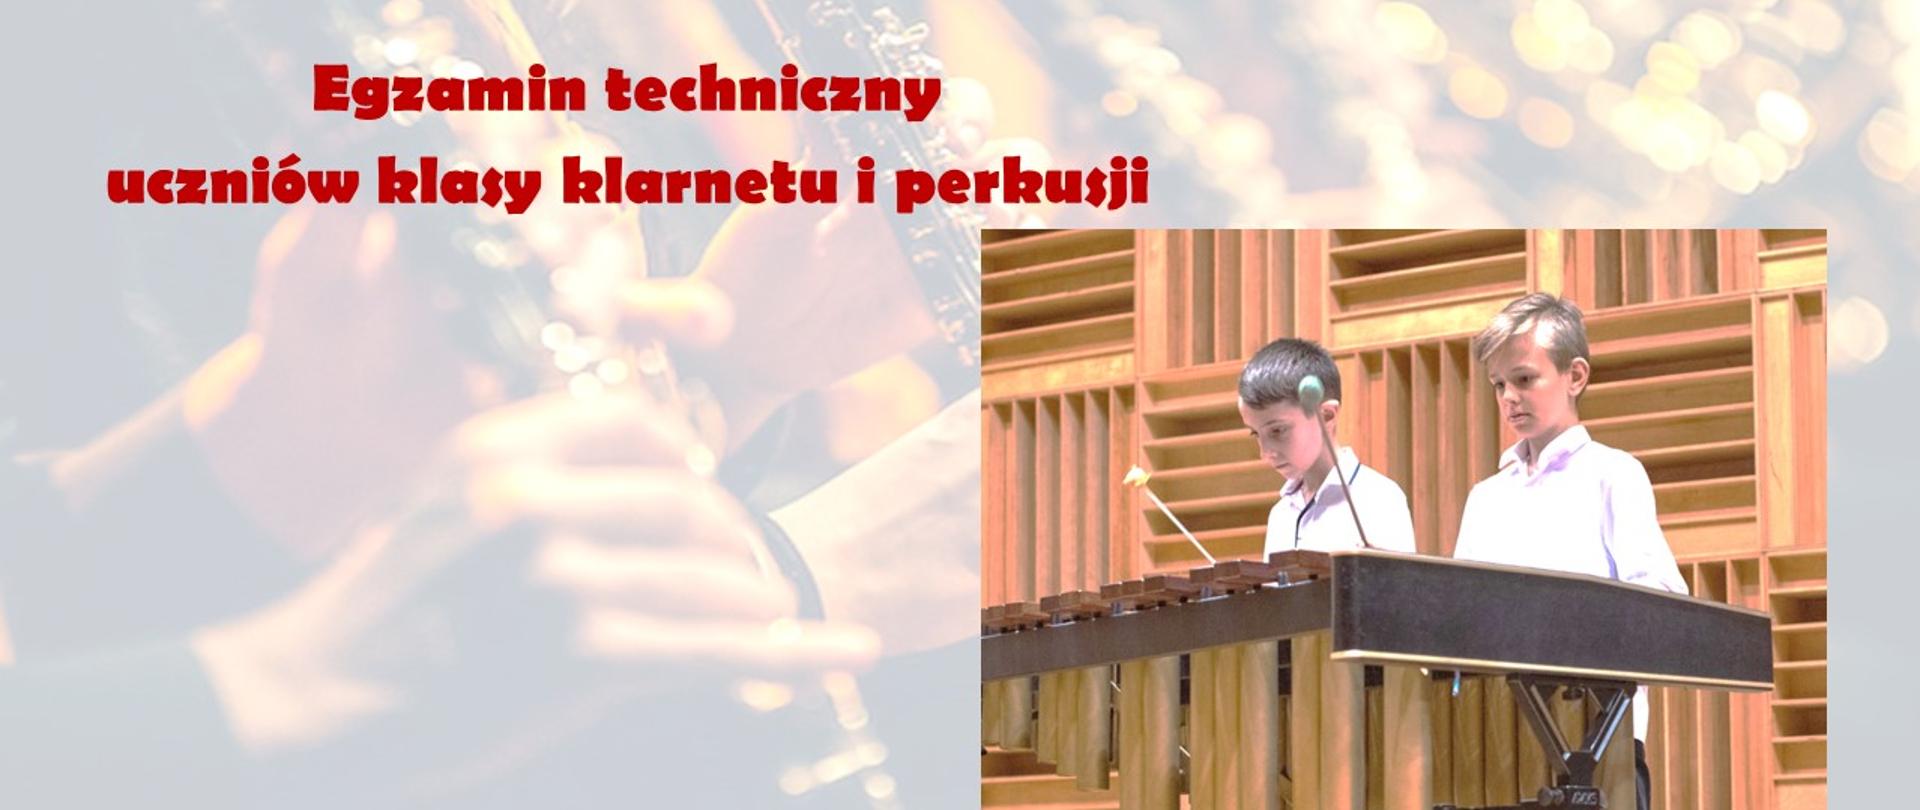 Zdjęcie z napisem w kolorze czerwonym Egzamin techniczny uczniów klasy klarnetu i perkusji; całość znajduje się na rozjaśnionym tle na którym widać dłonie grające na klarnecie, na tym tle jest zdjęcie dwóch chłopców w białych koszulach grające na wibrafonie